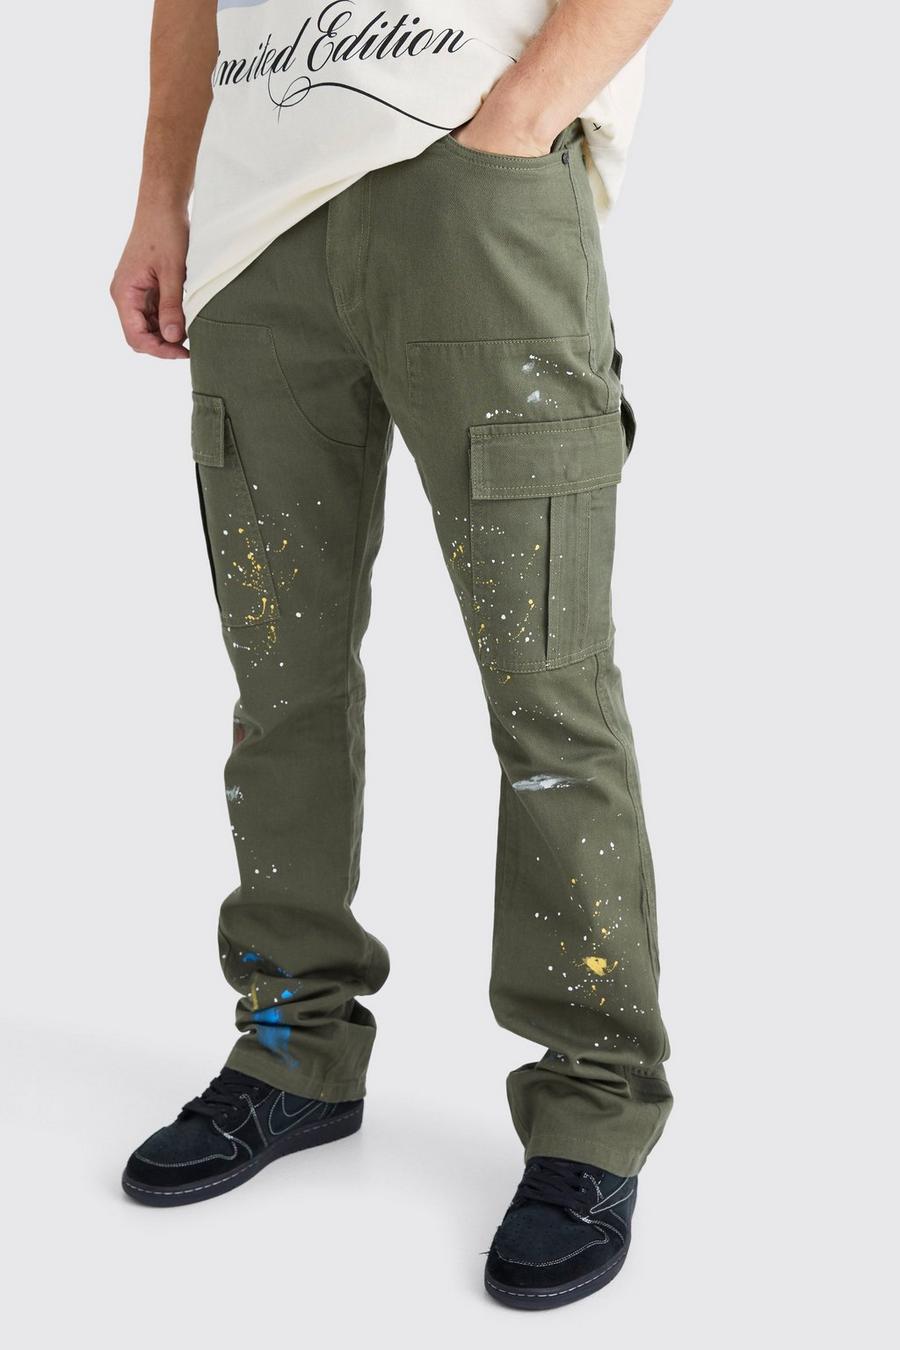 Khaki Tall Slim Flare Gusset Paint Splatter Cargo Pants